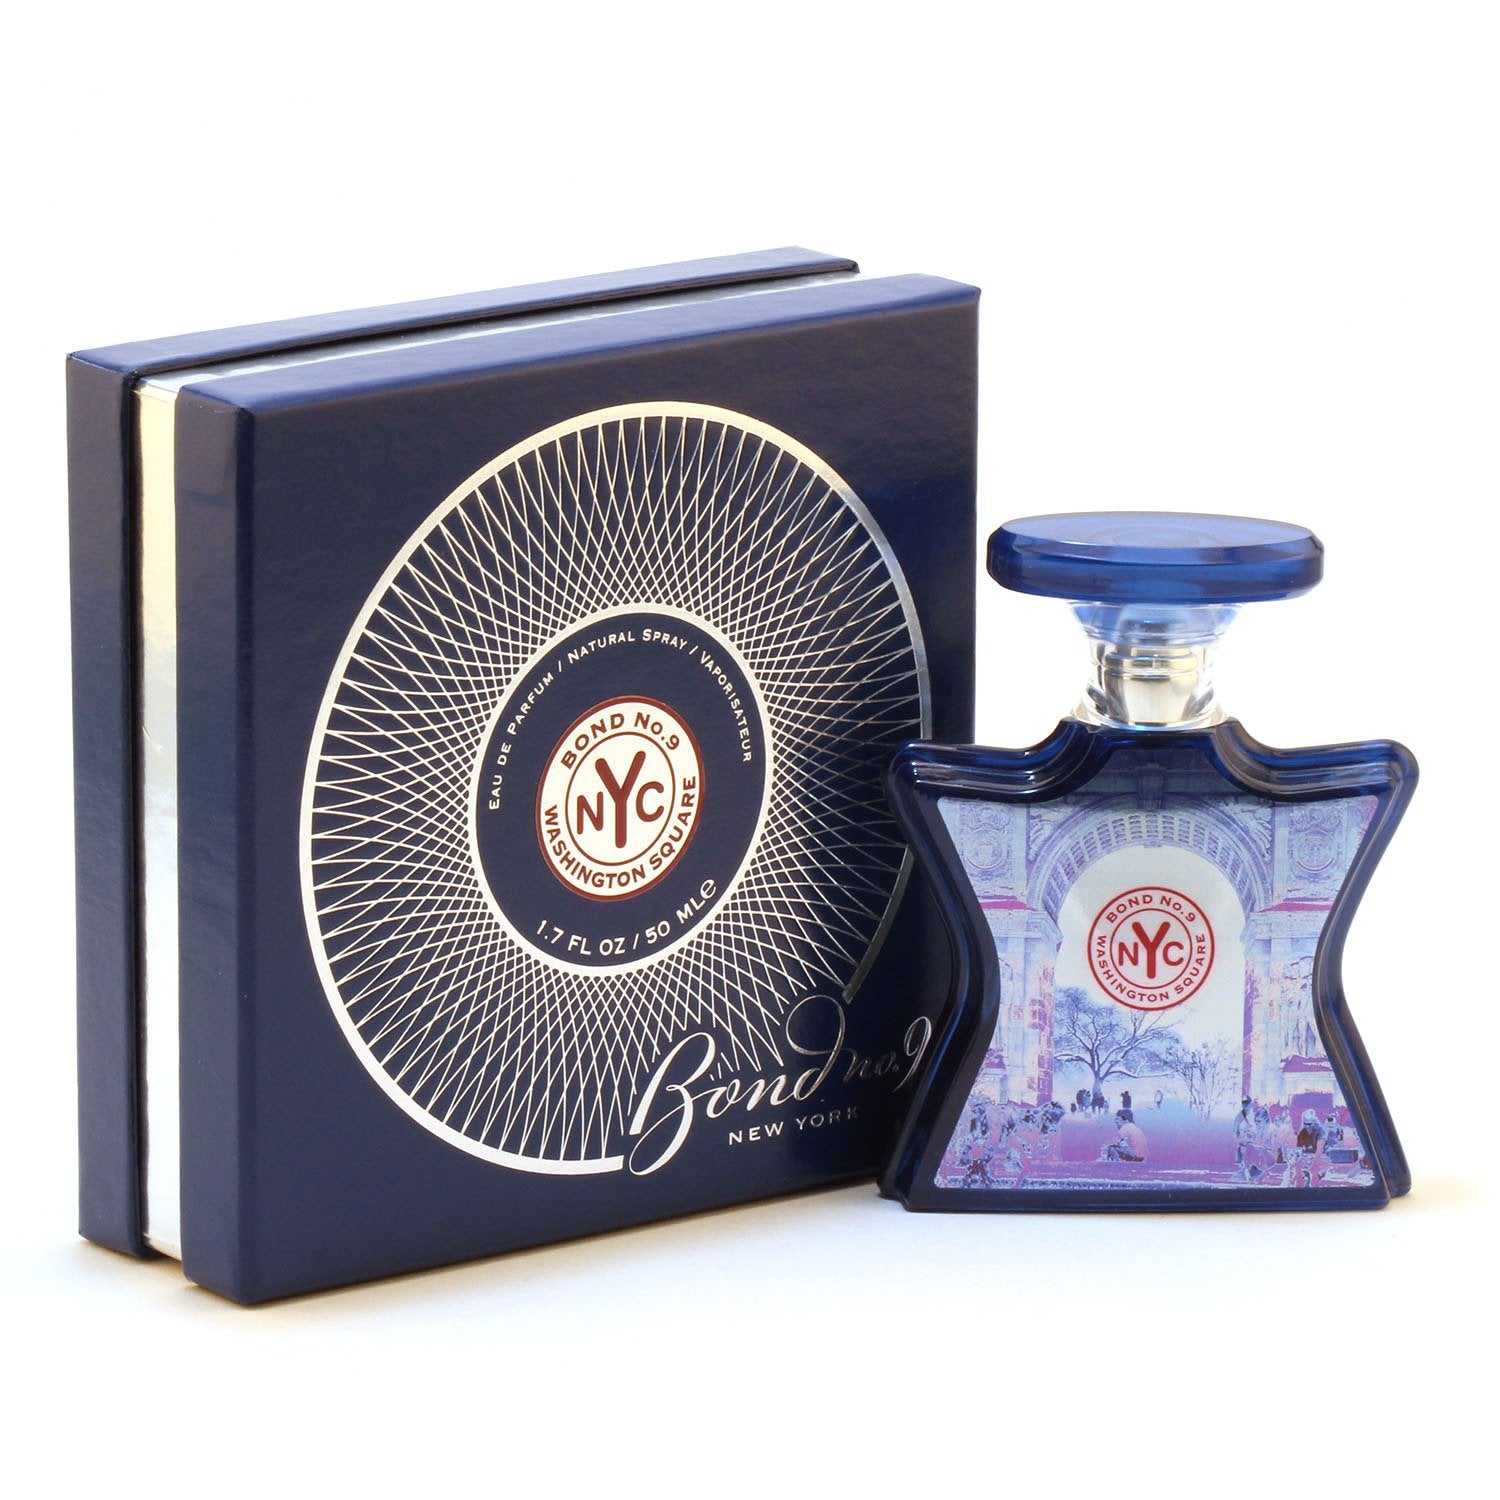 Perfume - BOND NO 9 WASHINGTON SQUARE FOR WOMEN - EAU DE PARFUM SPRAY